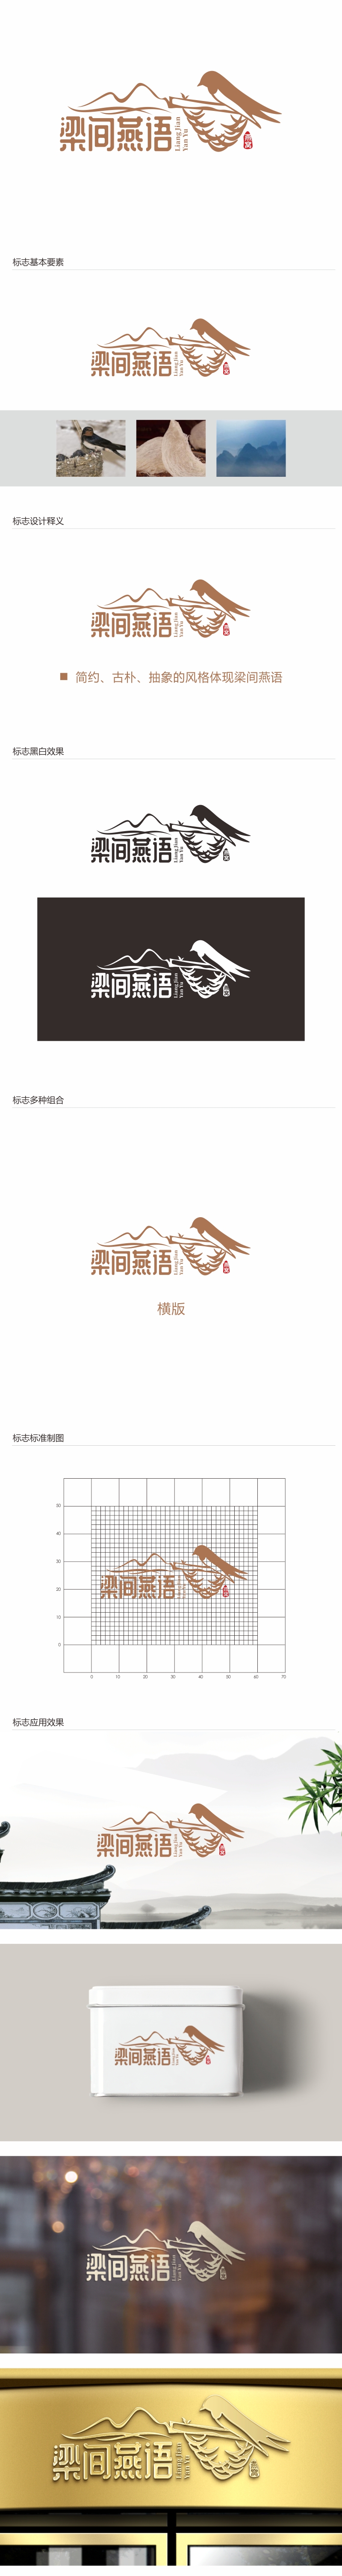 林思源的梁间燕语食品销售logo设计